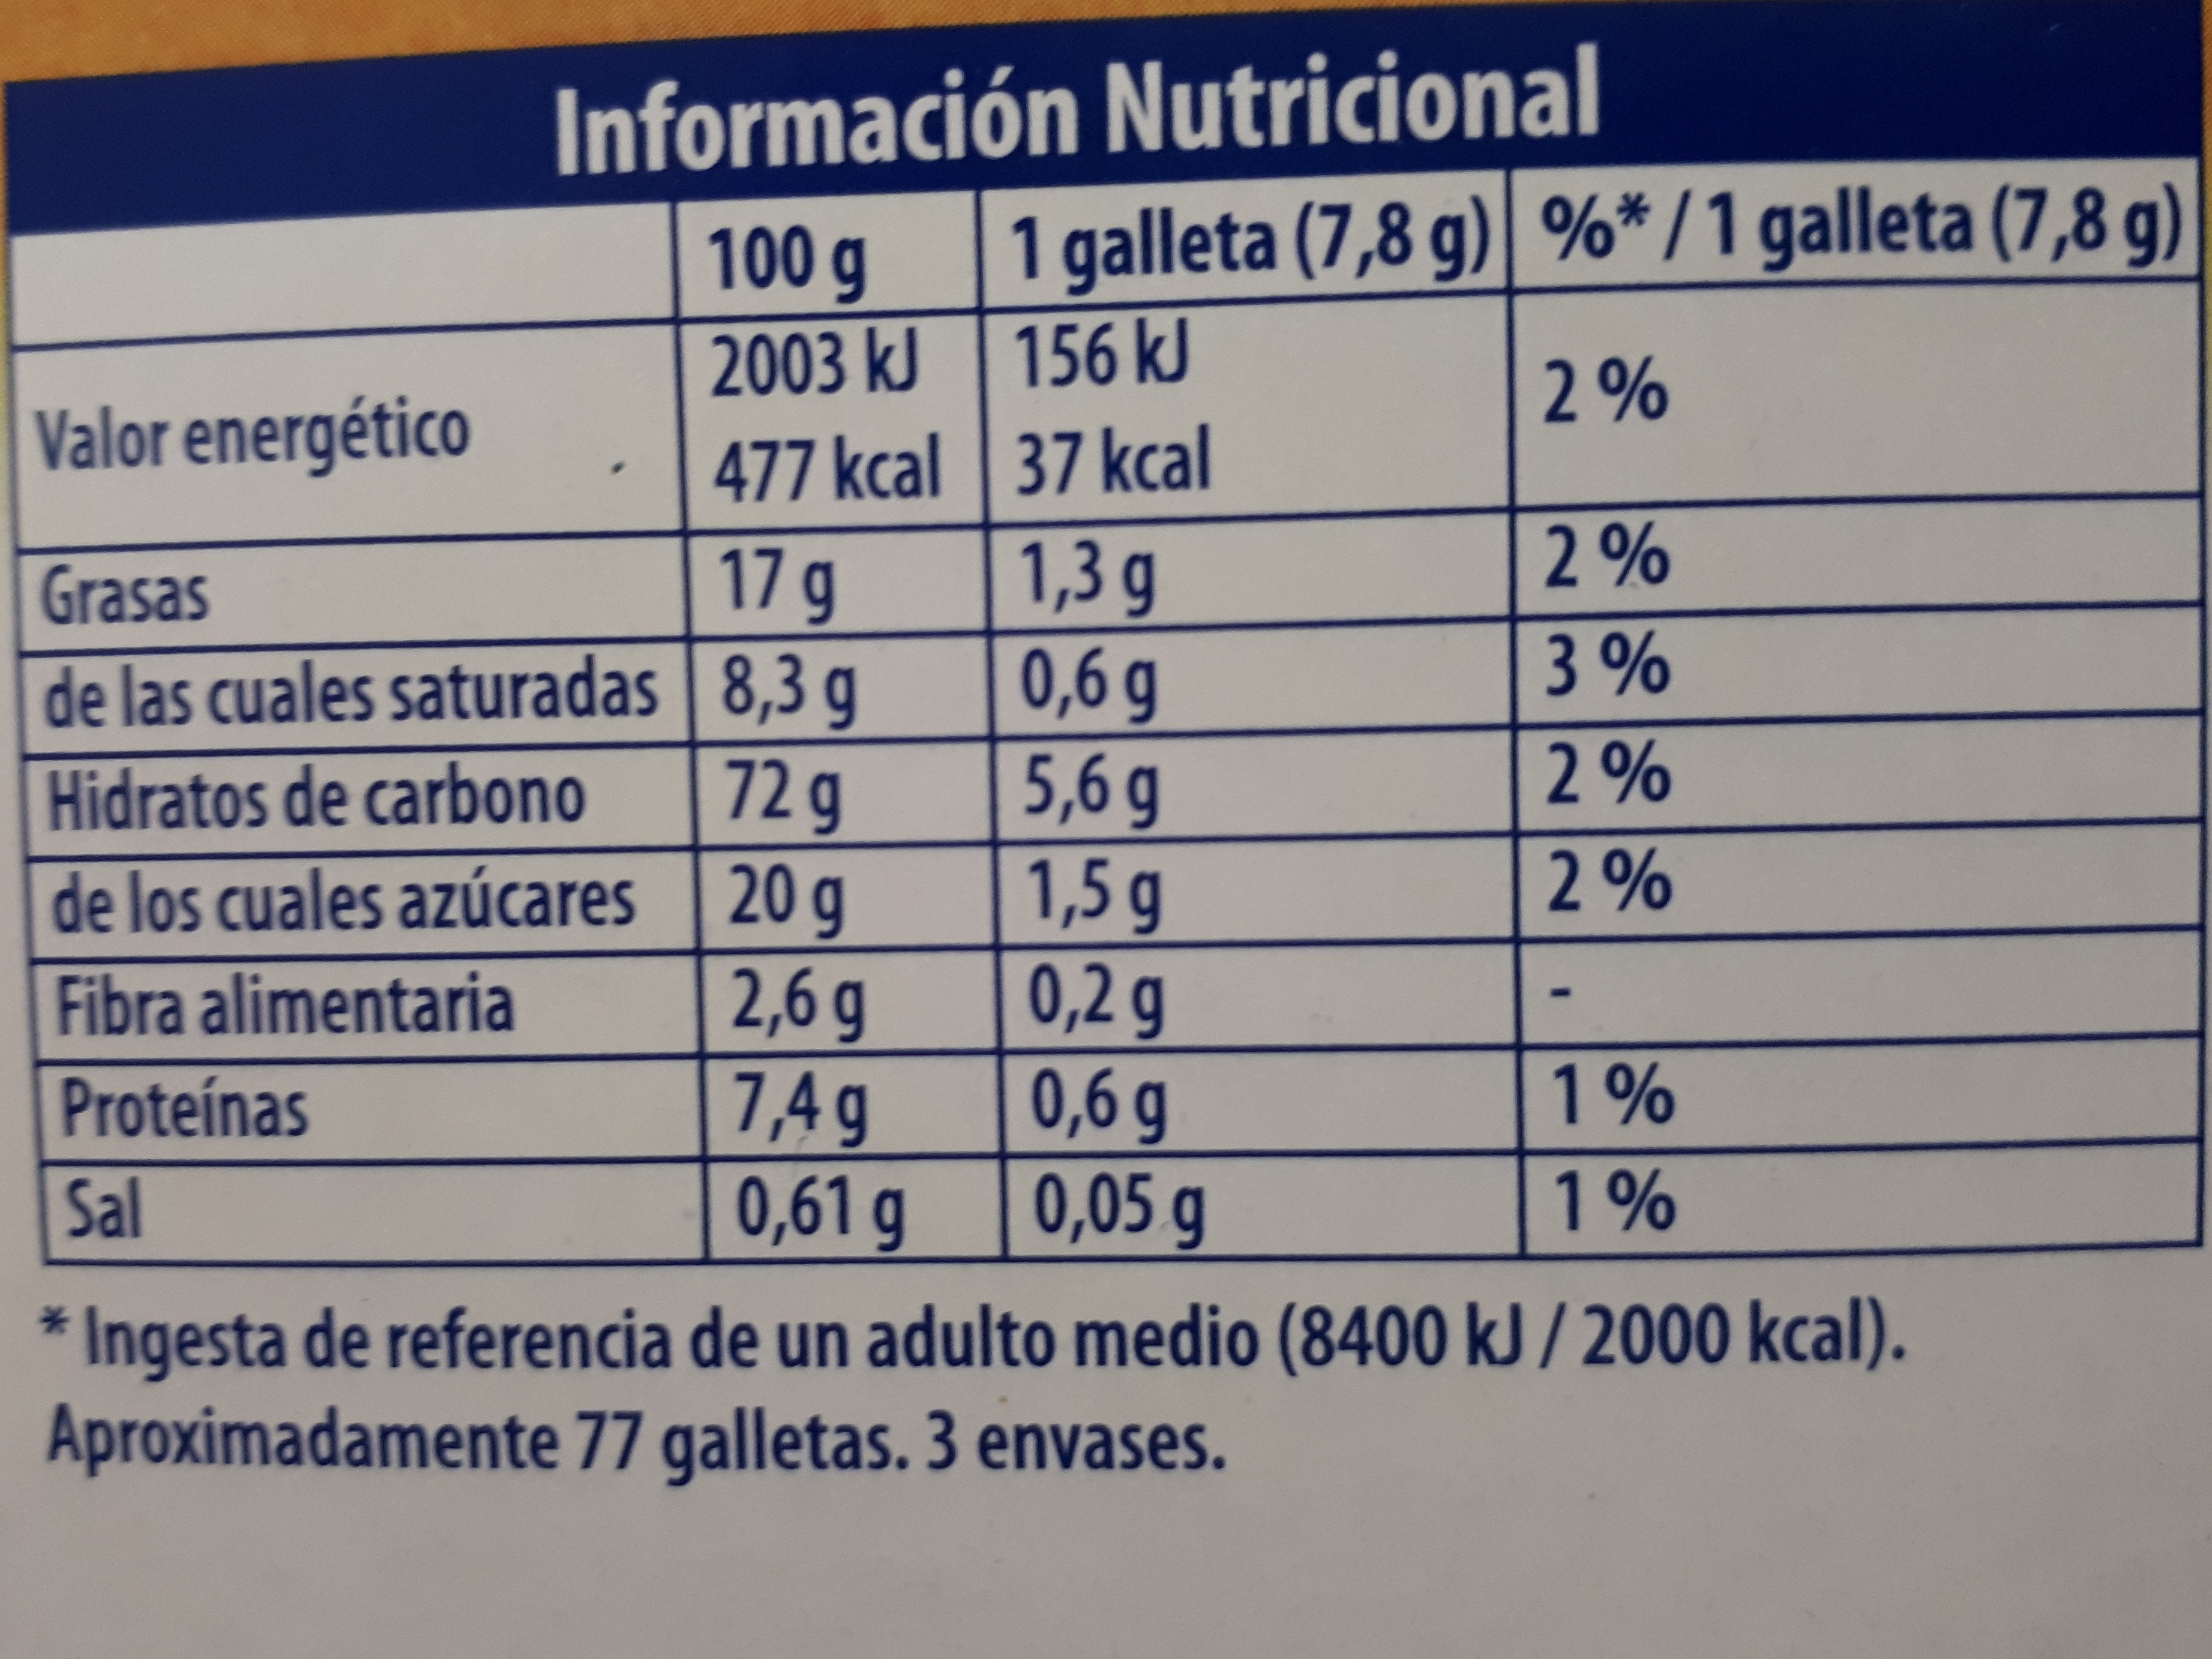 Galletas doradas al horno - Información nutricional